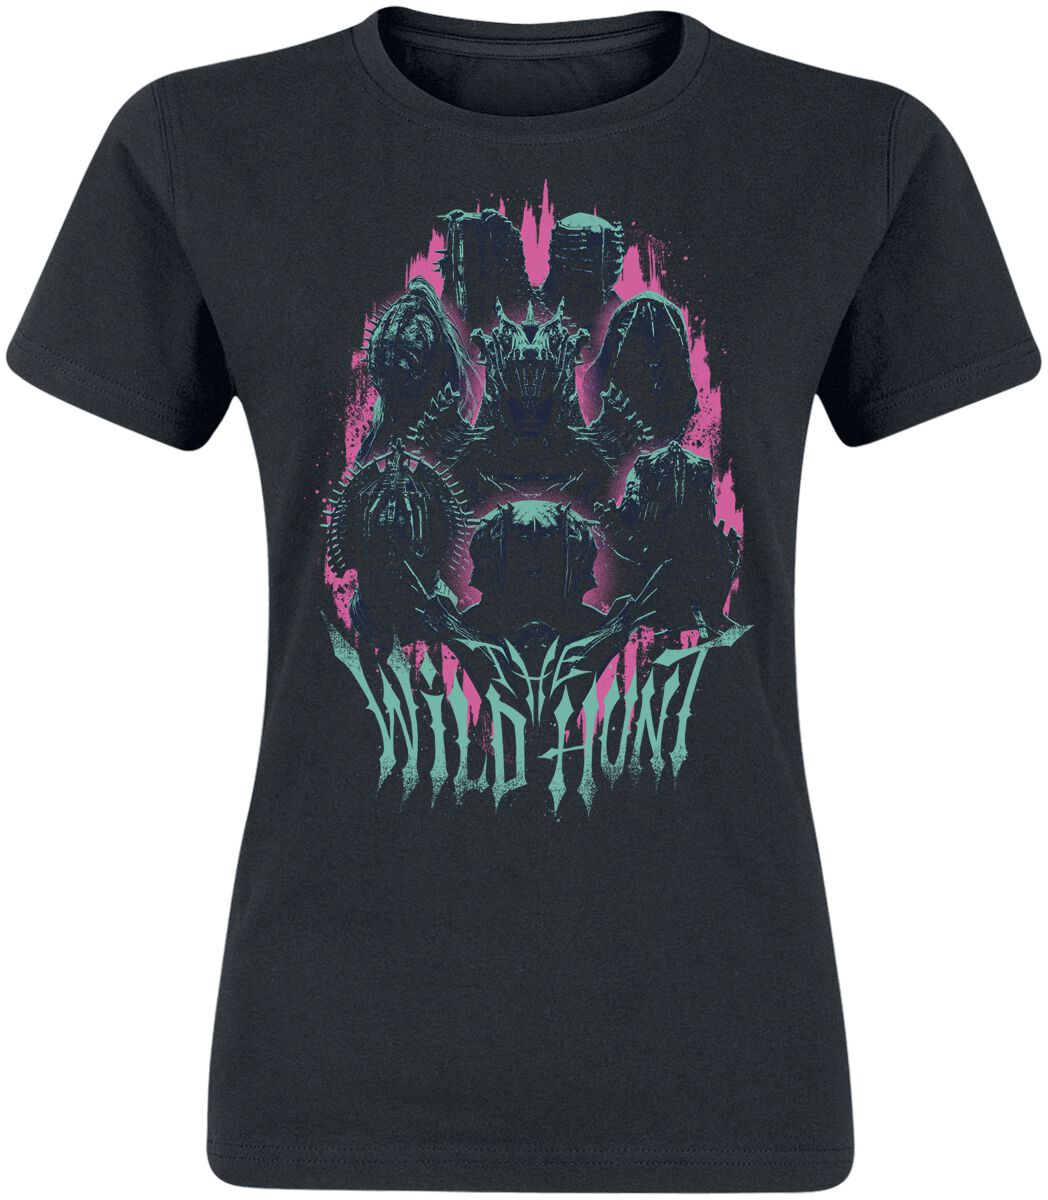 The Witcher T-Shirt - Season 3 - Wildhunt - S bis XXL - für Damen - Größe XL - schwarz  - EMP exklusives Merchandise!